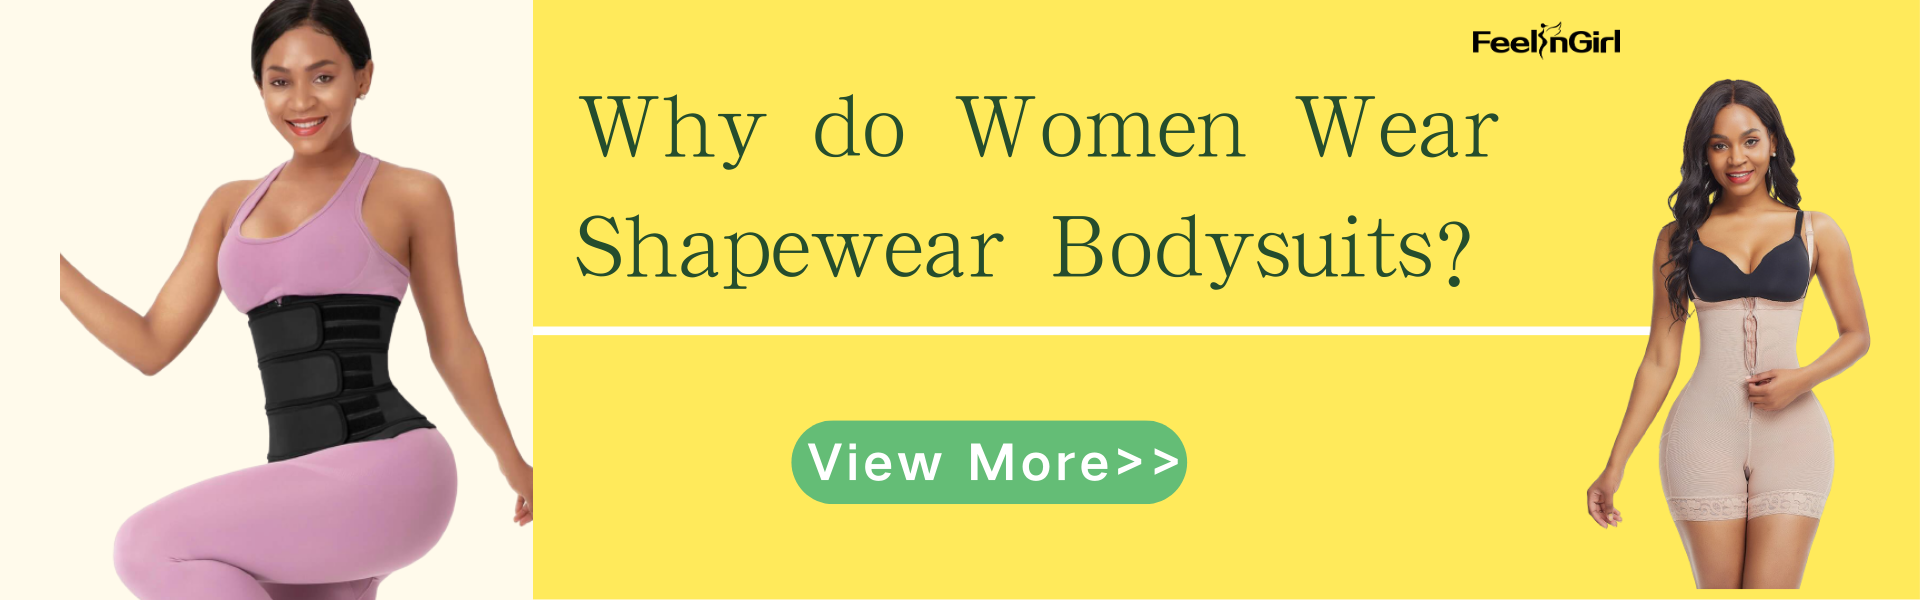 Why do Women Wear Shapewear Bodysuits?